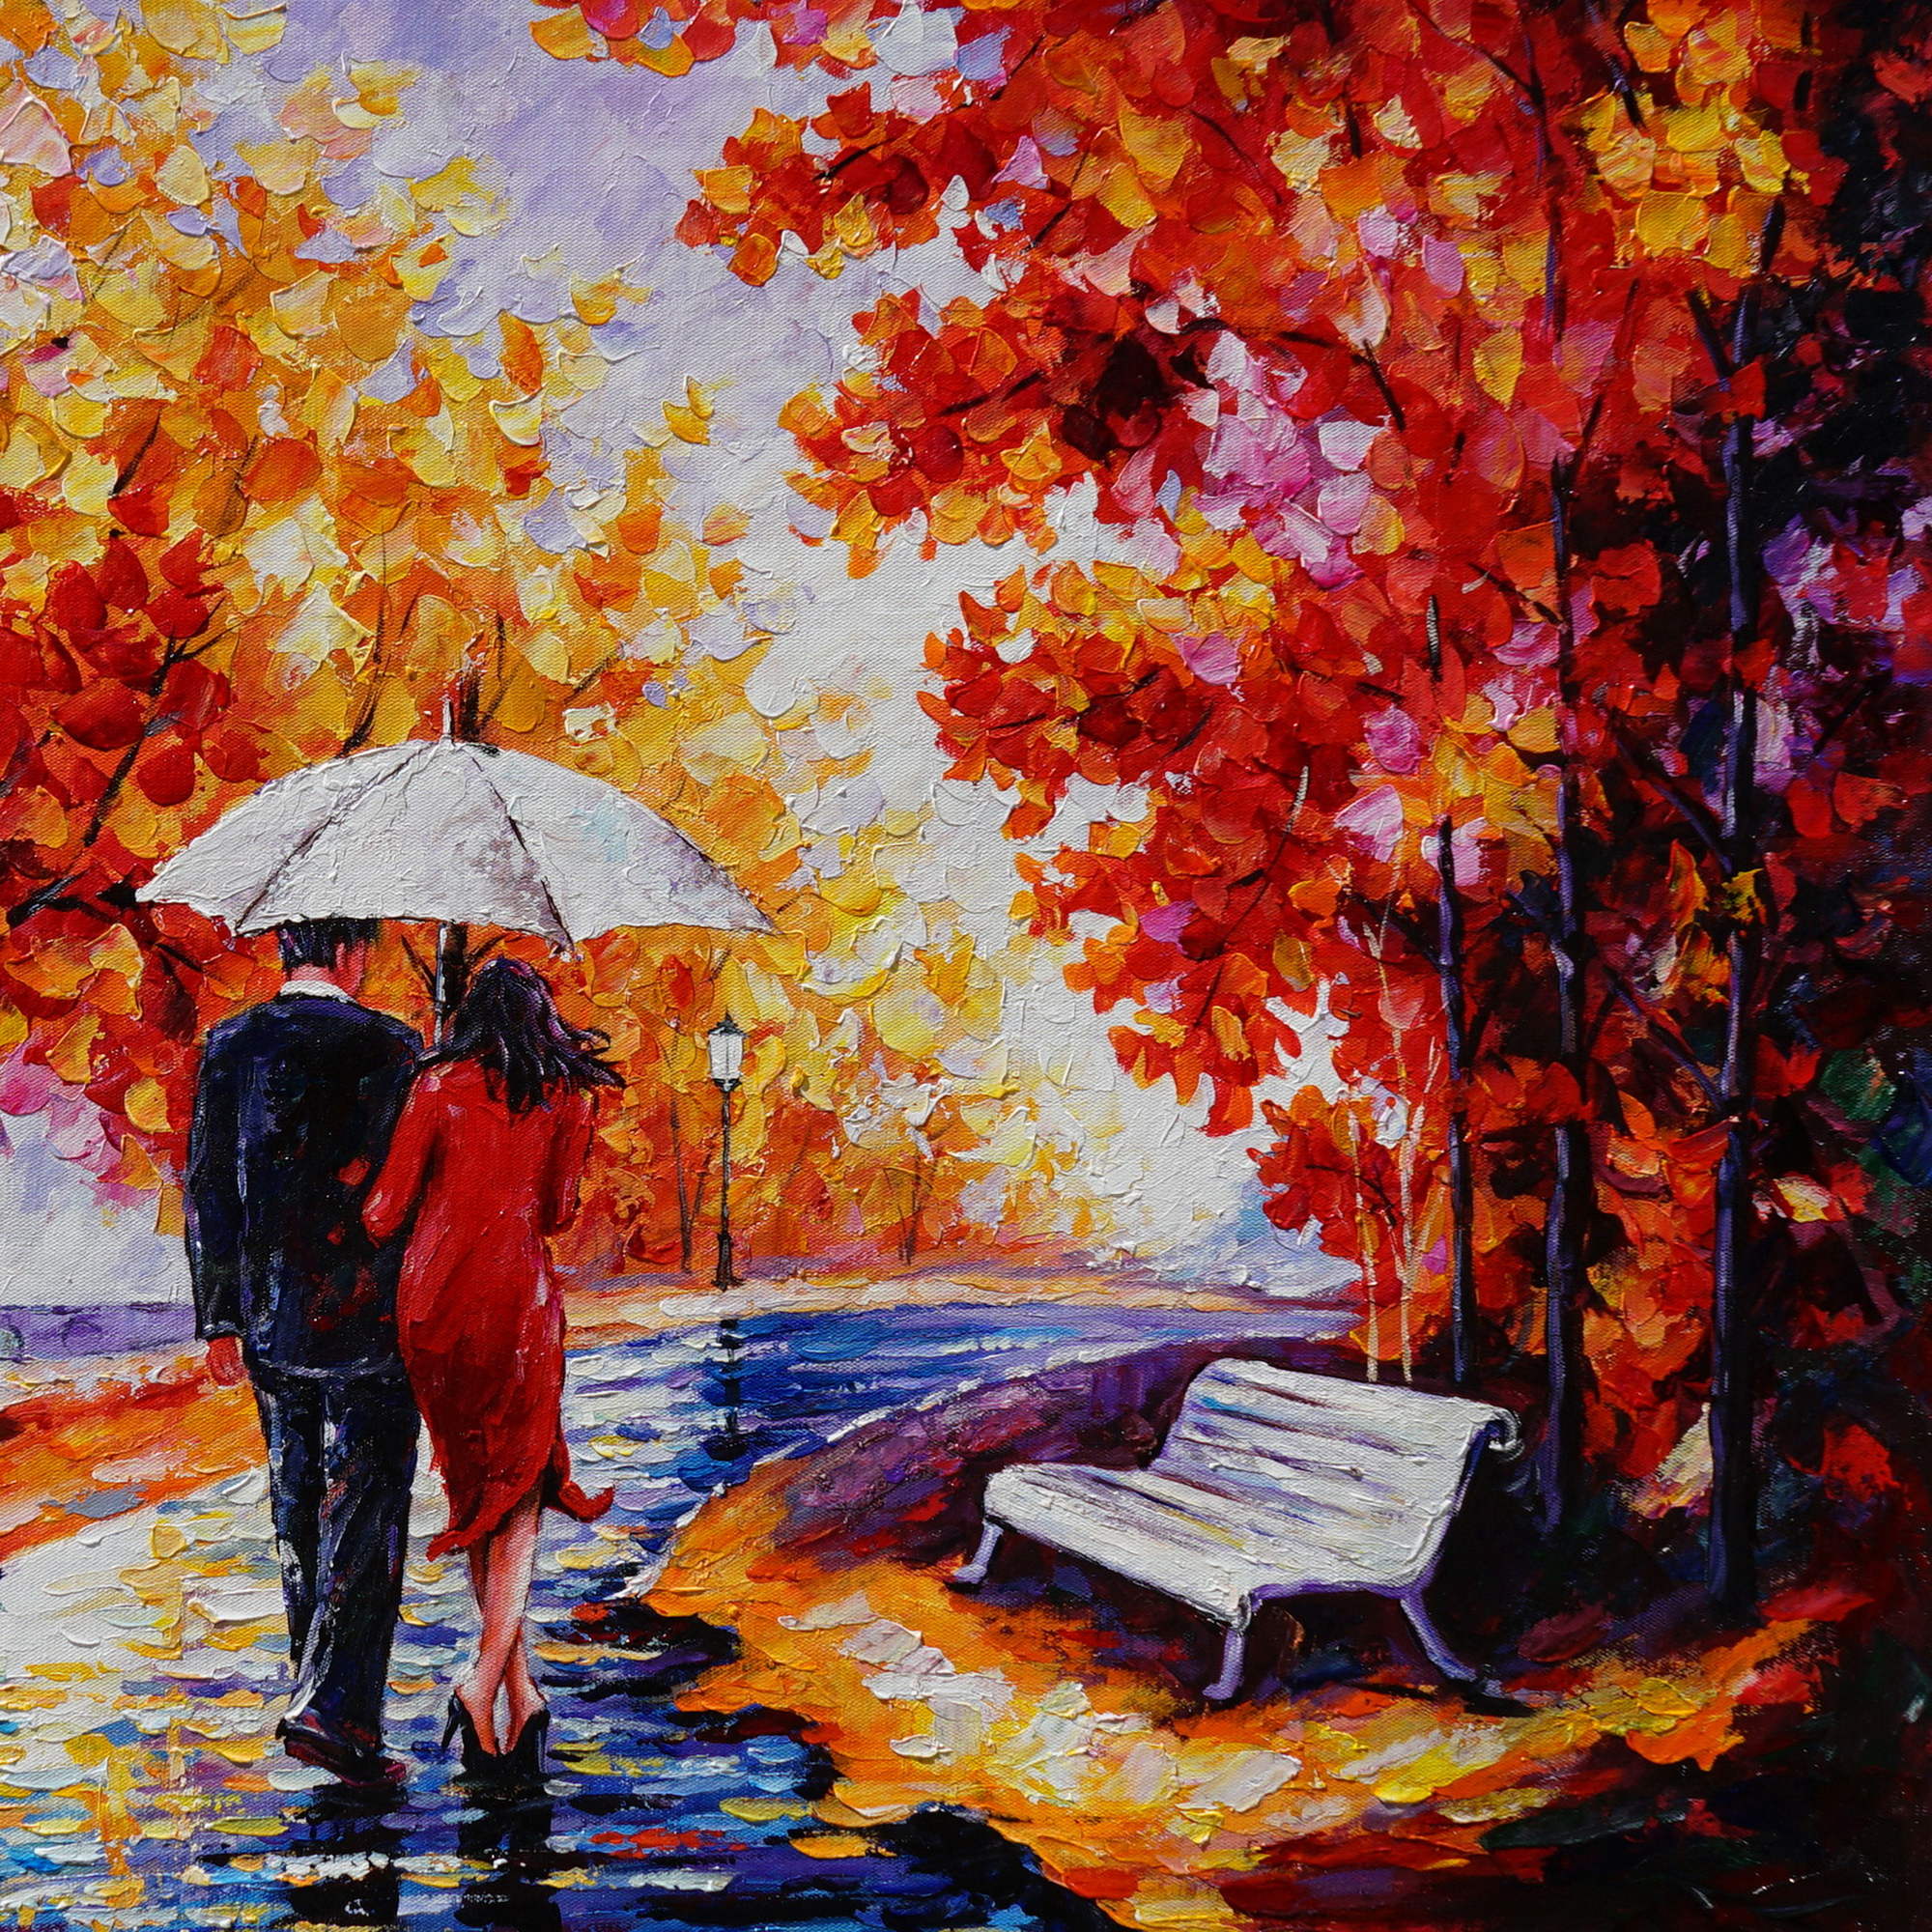 Promenade d'automne le long de la rivière peinte à la main 75x100cm